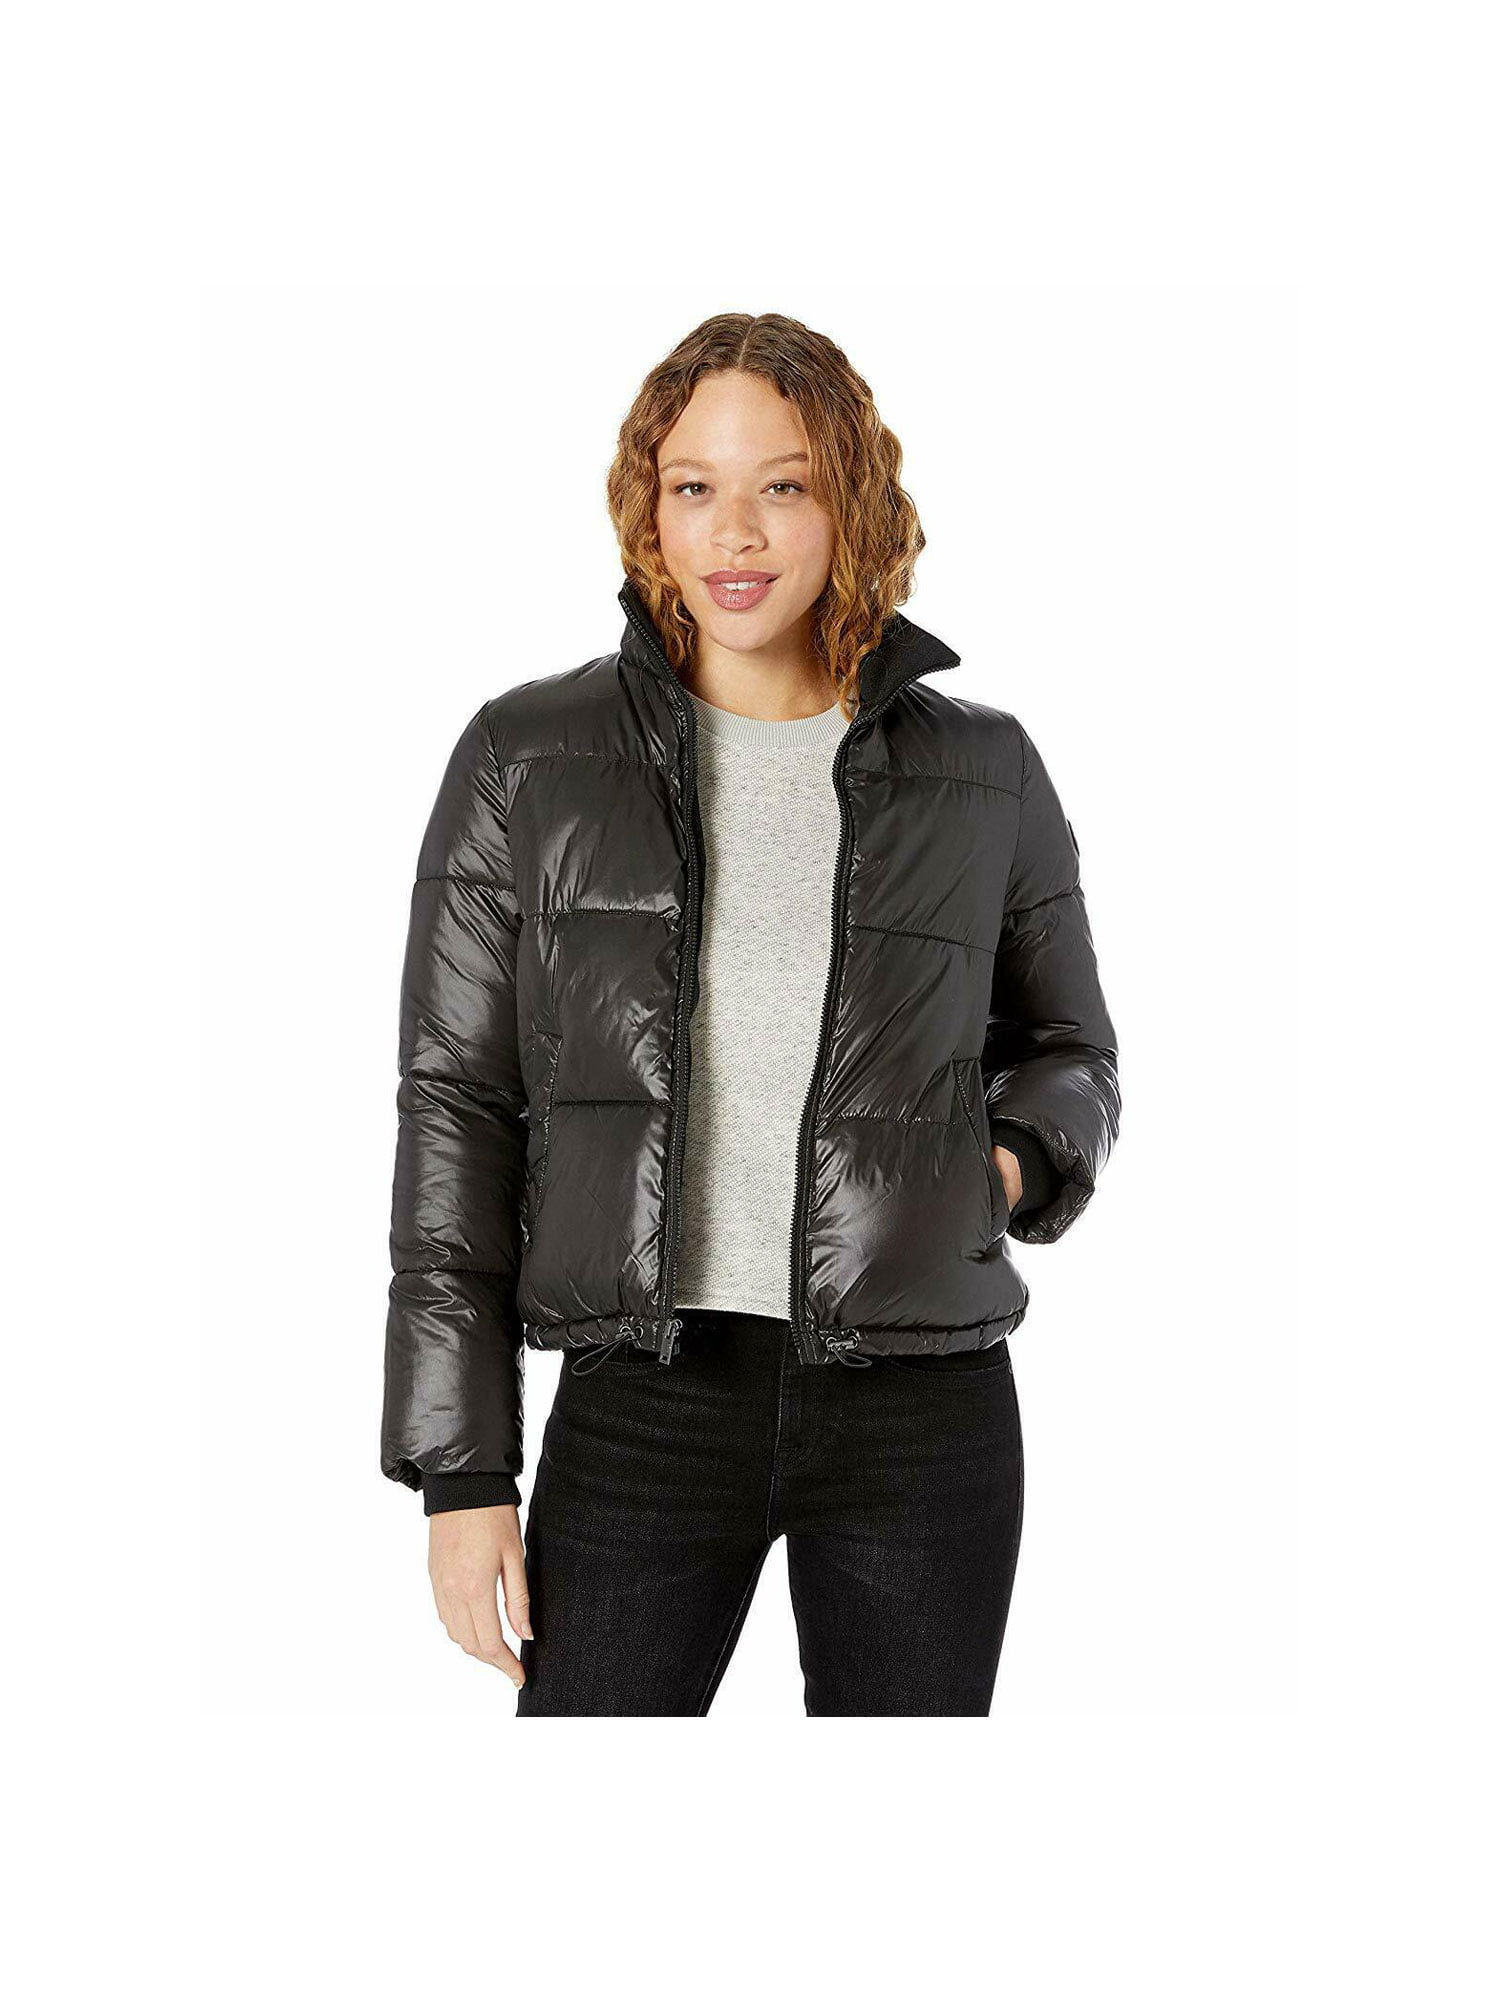 UGG Izzie Puffer Women's Nylon Jacket w/ Pockets 1105651 - Walmart.com